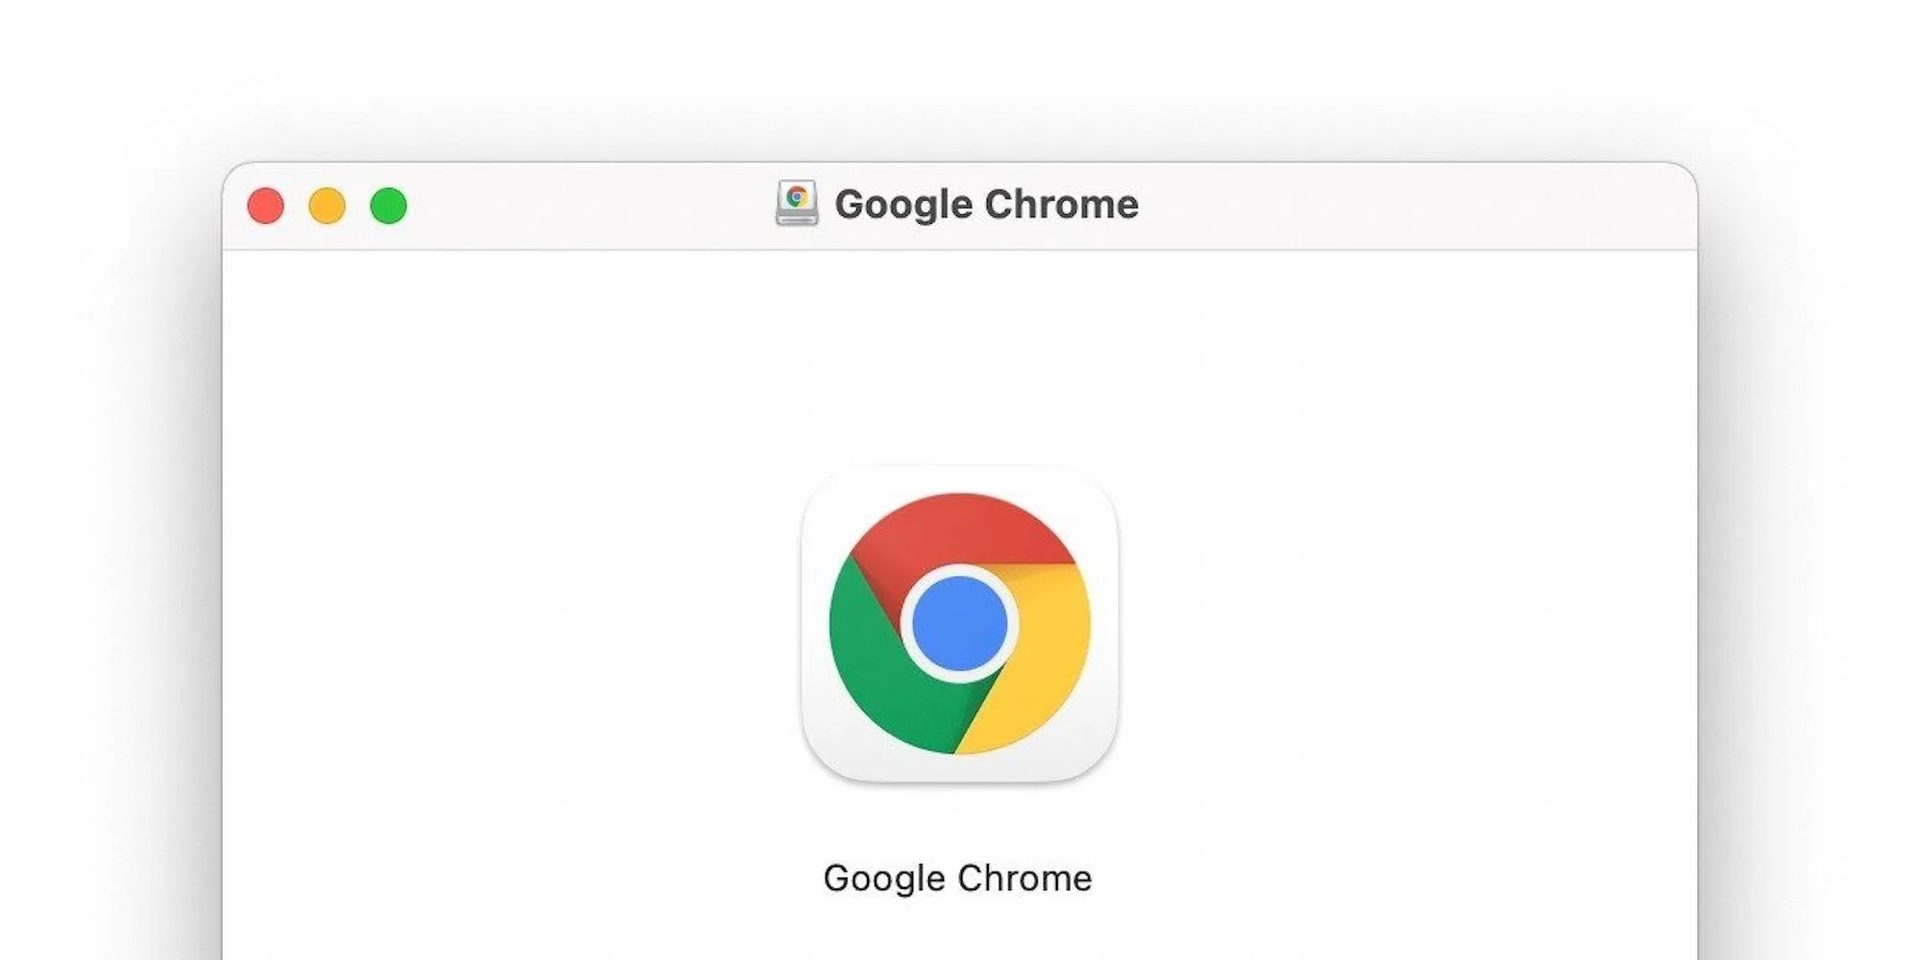 Chrome auf macOS ist jetzt 20 Prozent schneller und der schnellste Browser auf dem Mac